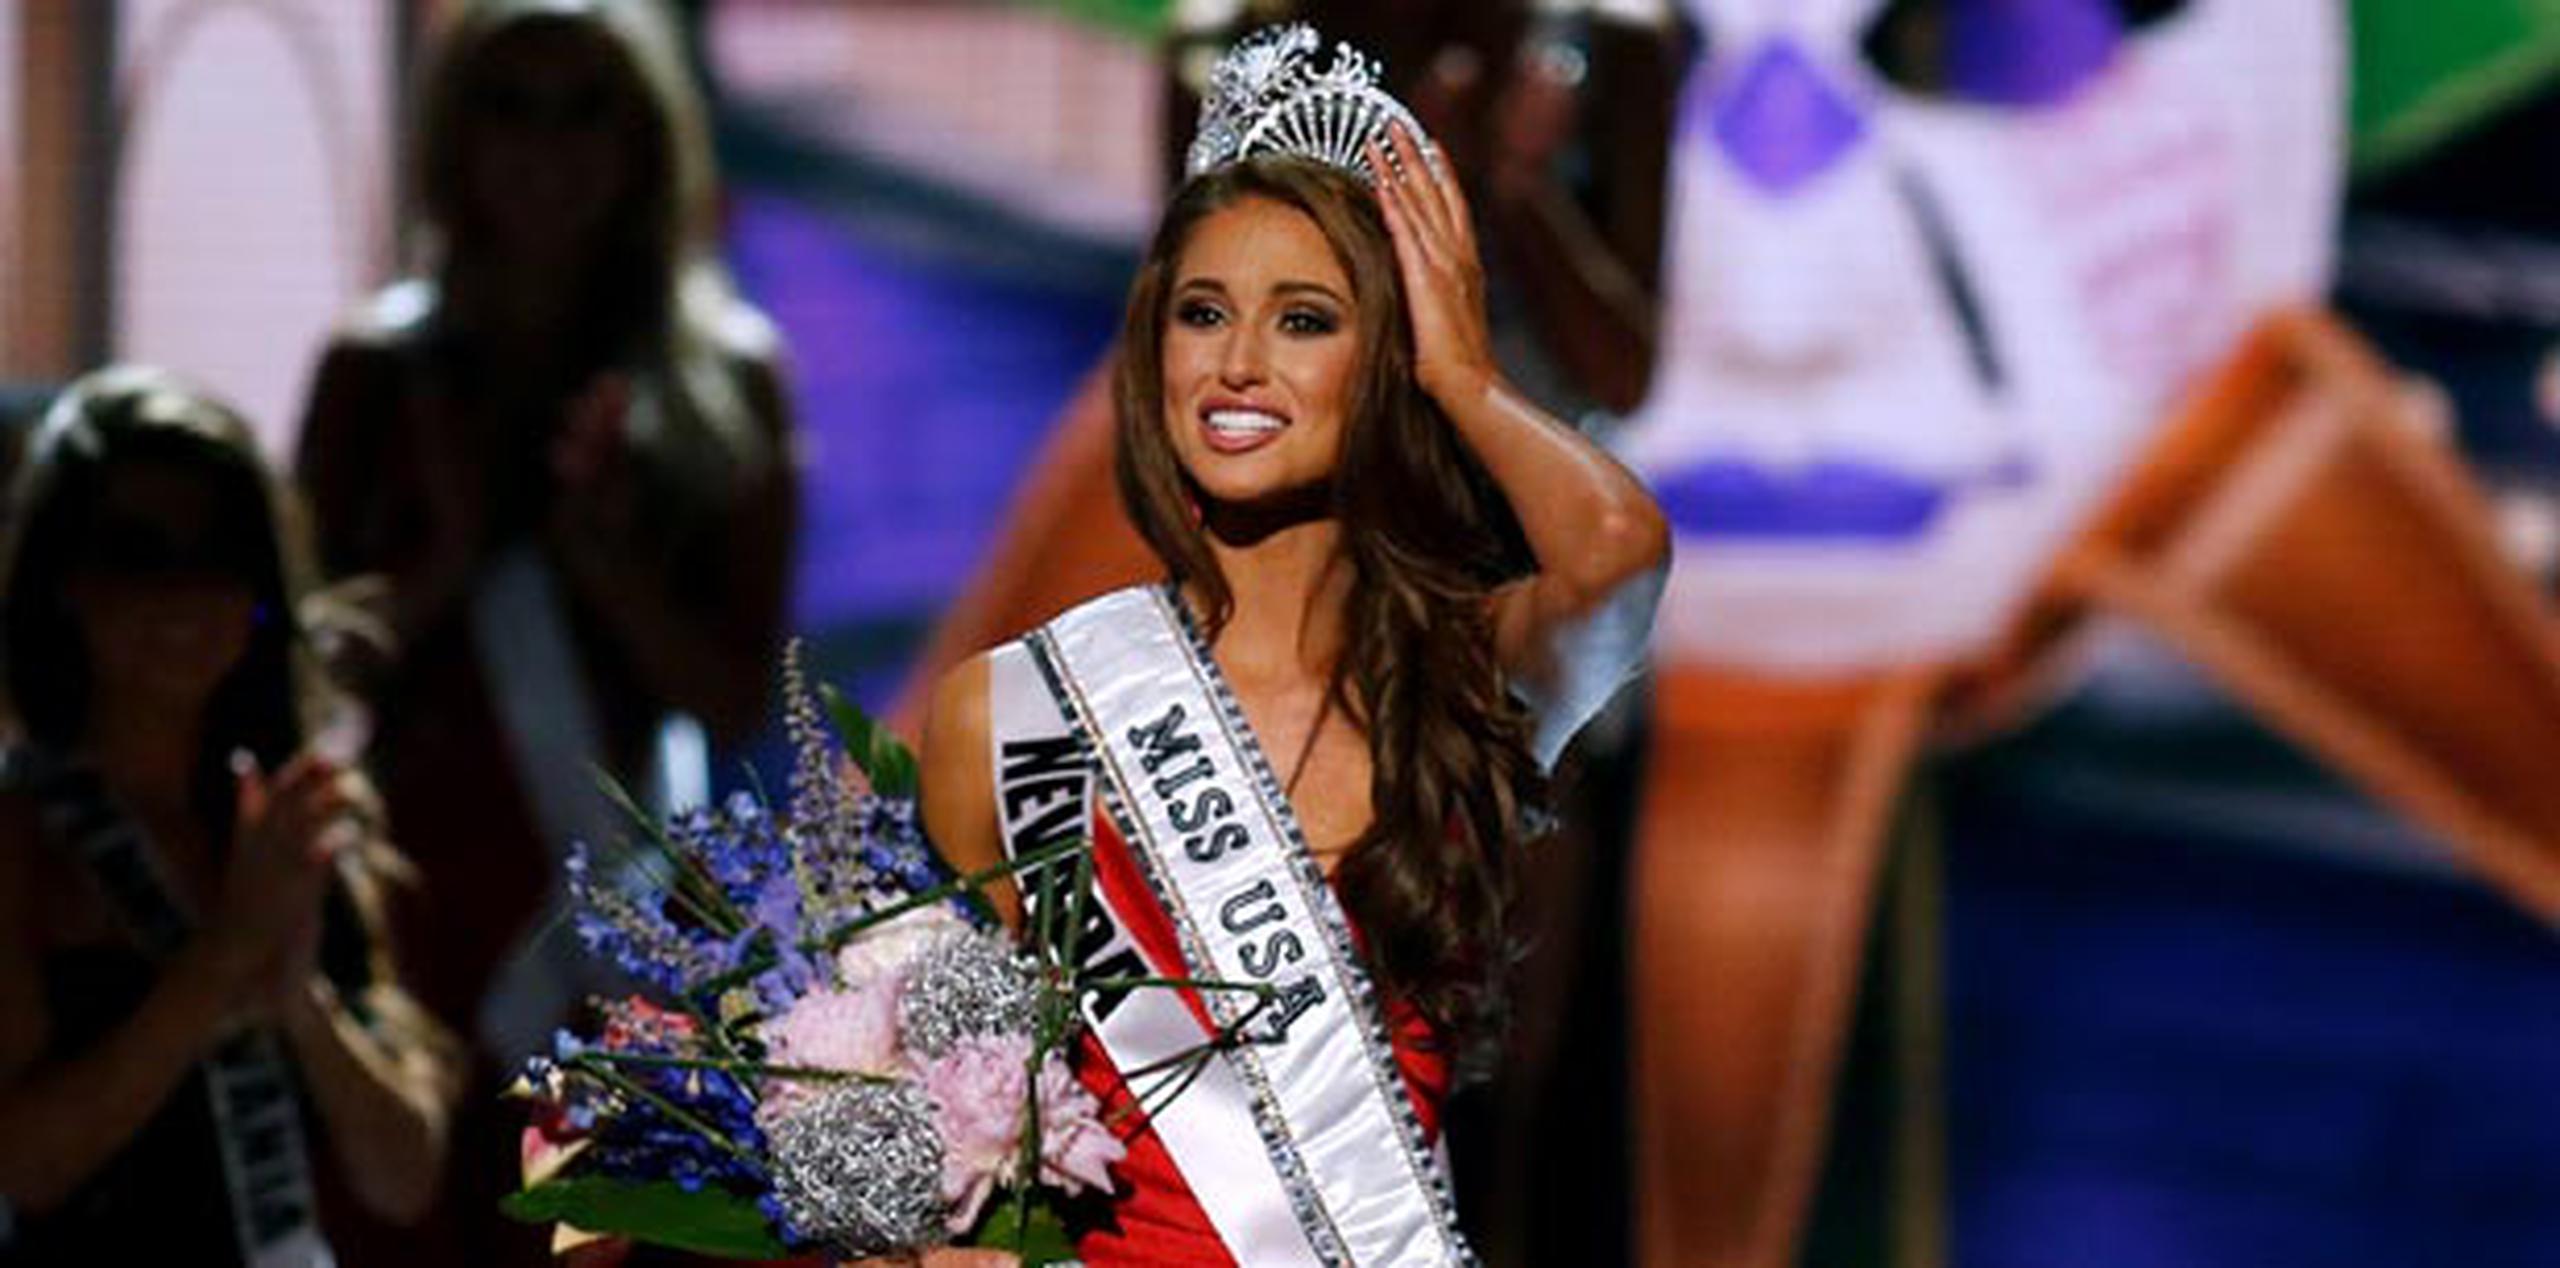 Sánchez agregó que estaba "muy orgullosa de llevar el título de Miss USA de regreso a Nevada". (AP/Jonathan Bachman)